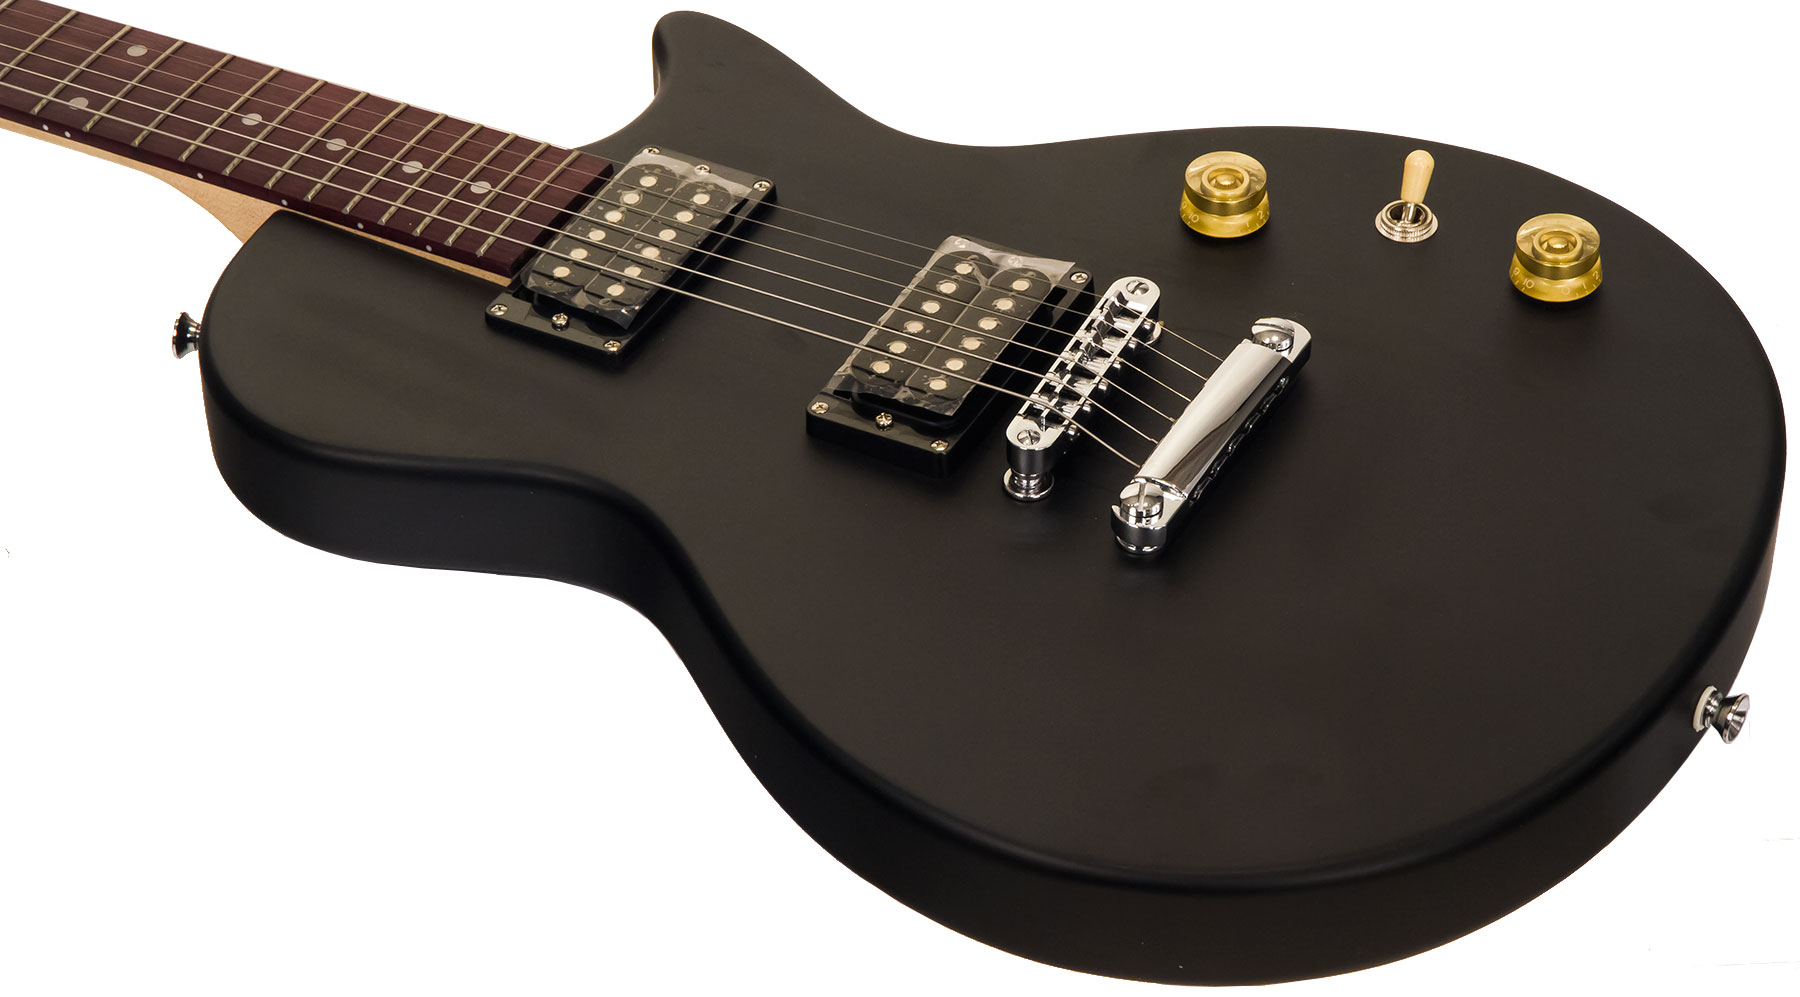 Eastone Lpl70 Hh Ht Pur - Black Satin - Guitarra eléctrica de corte único. - Variation 2